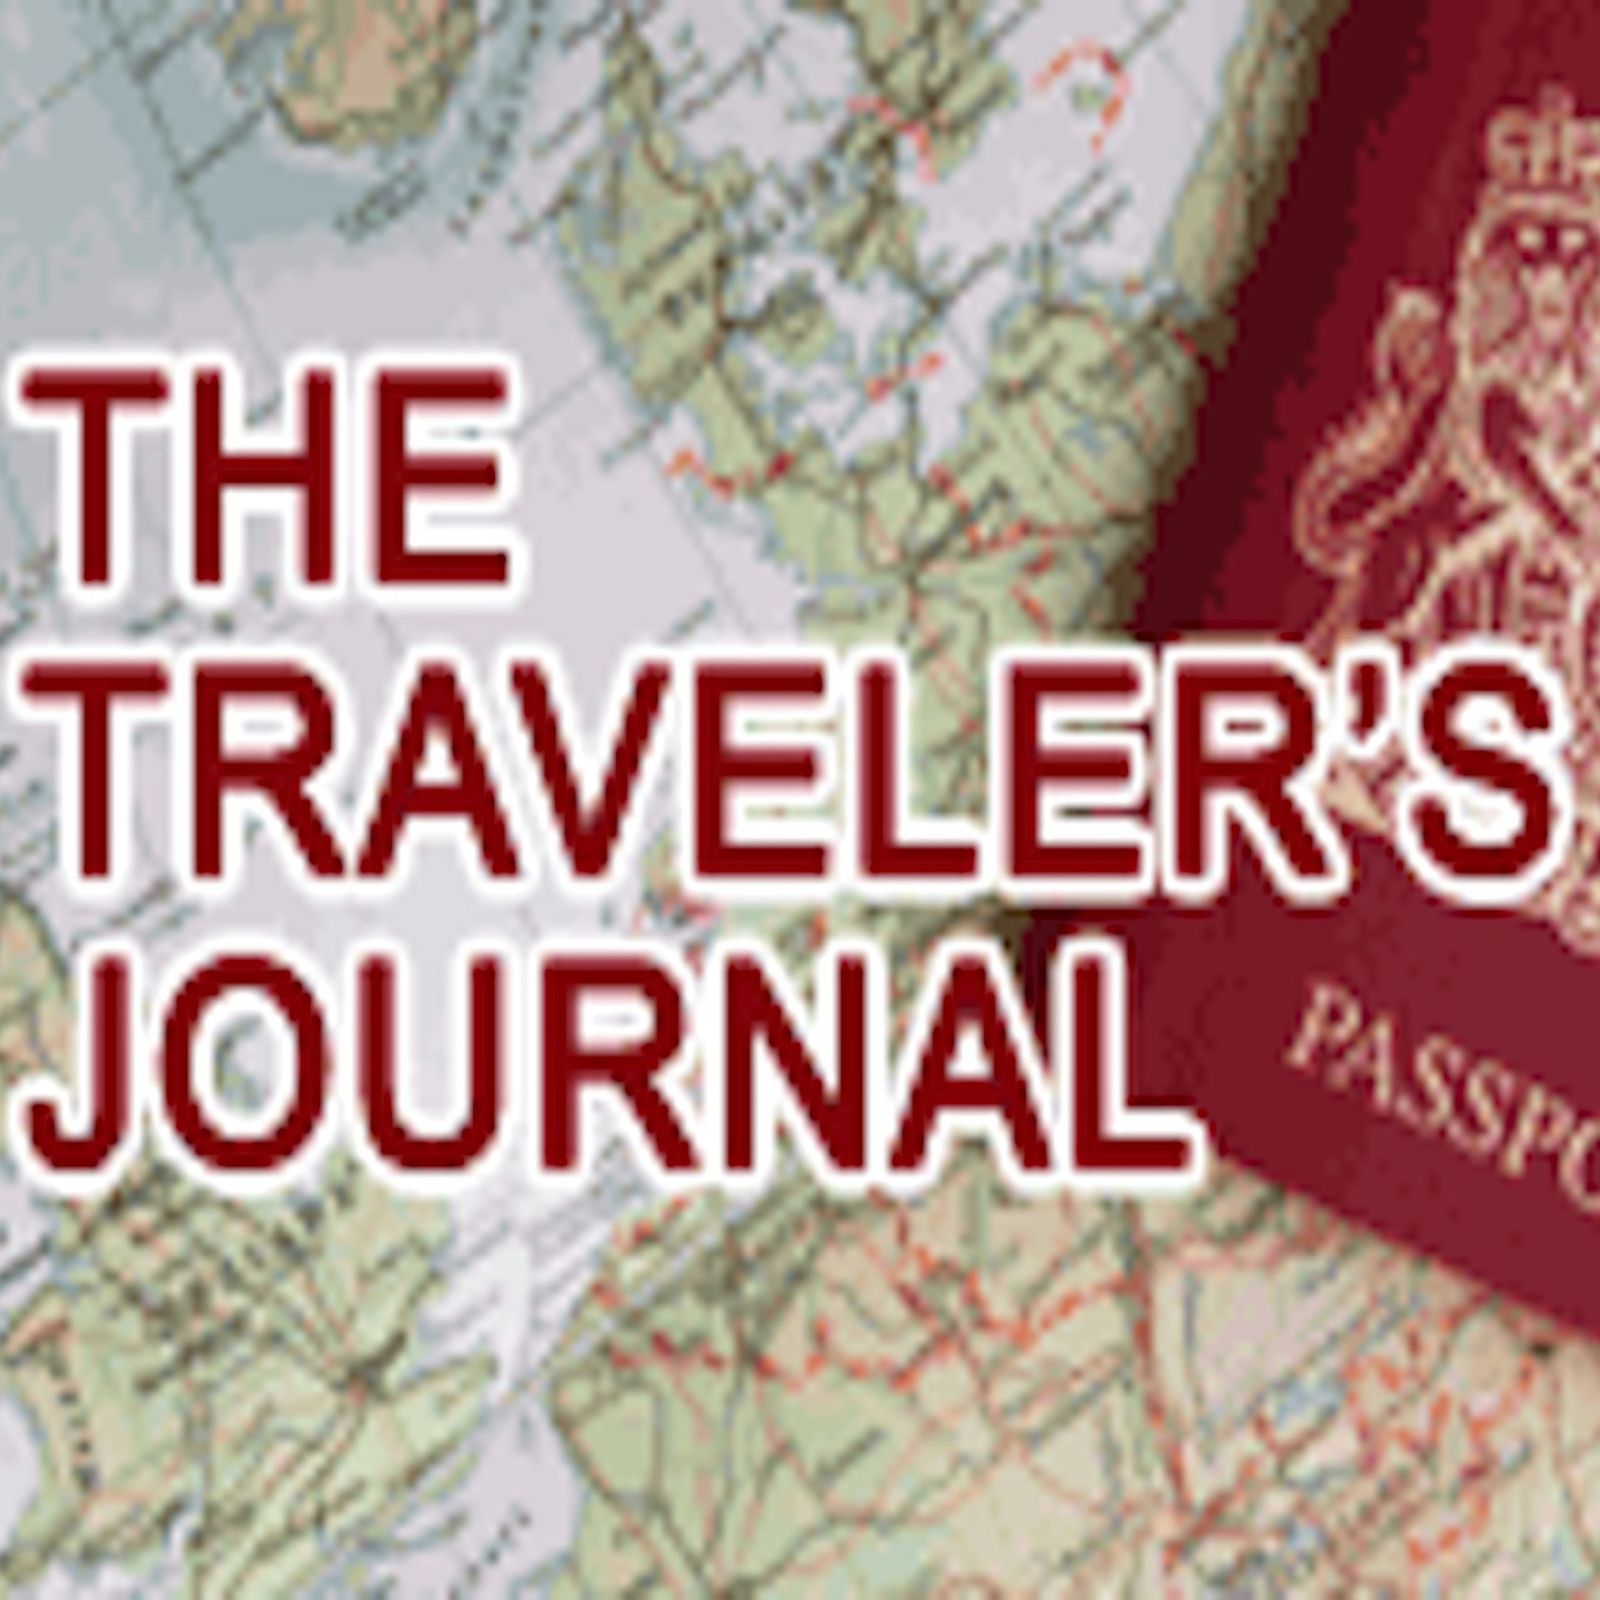 The Traveler's Journal